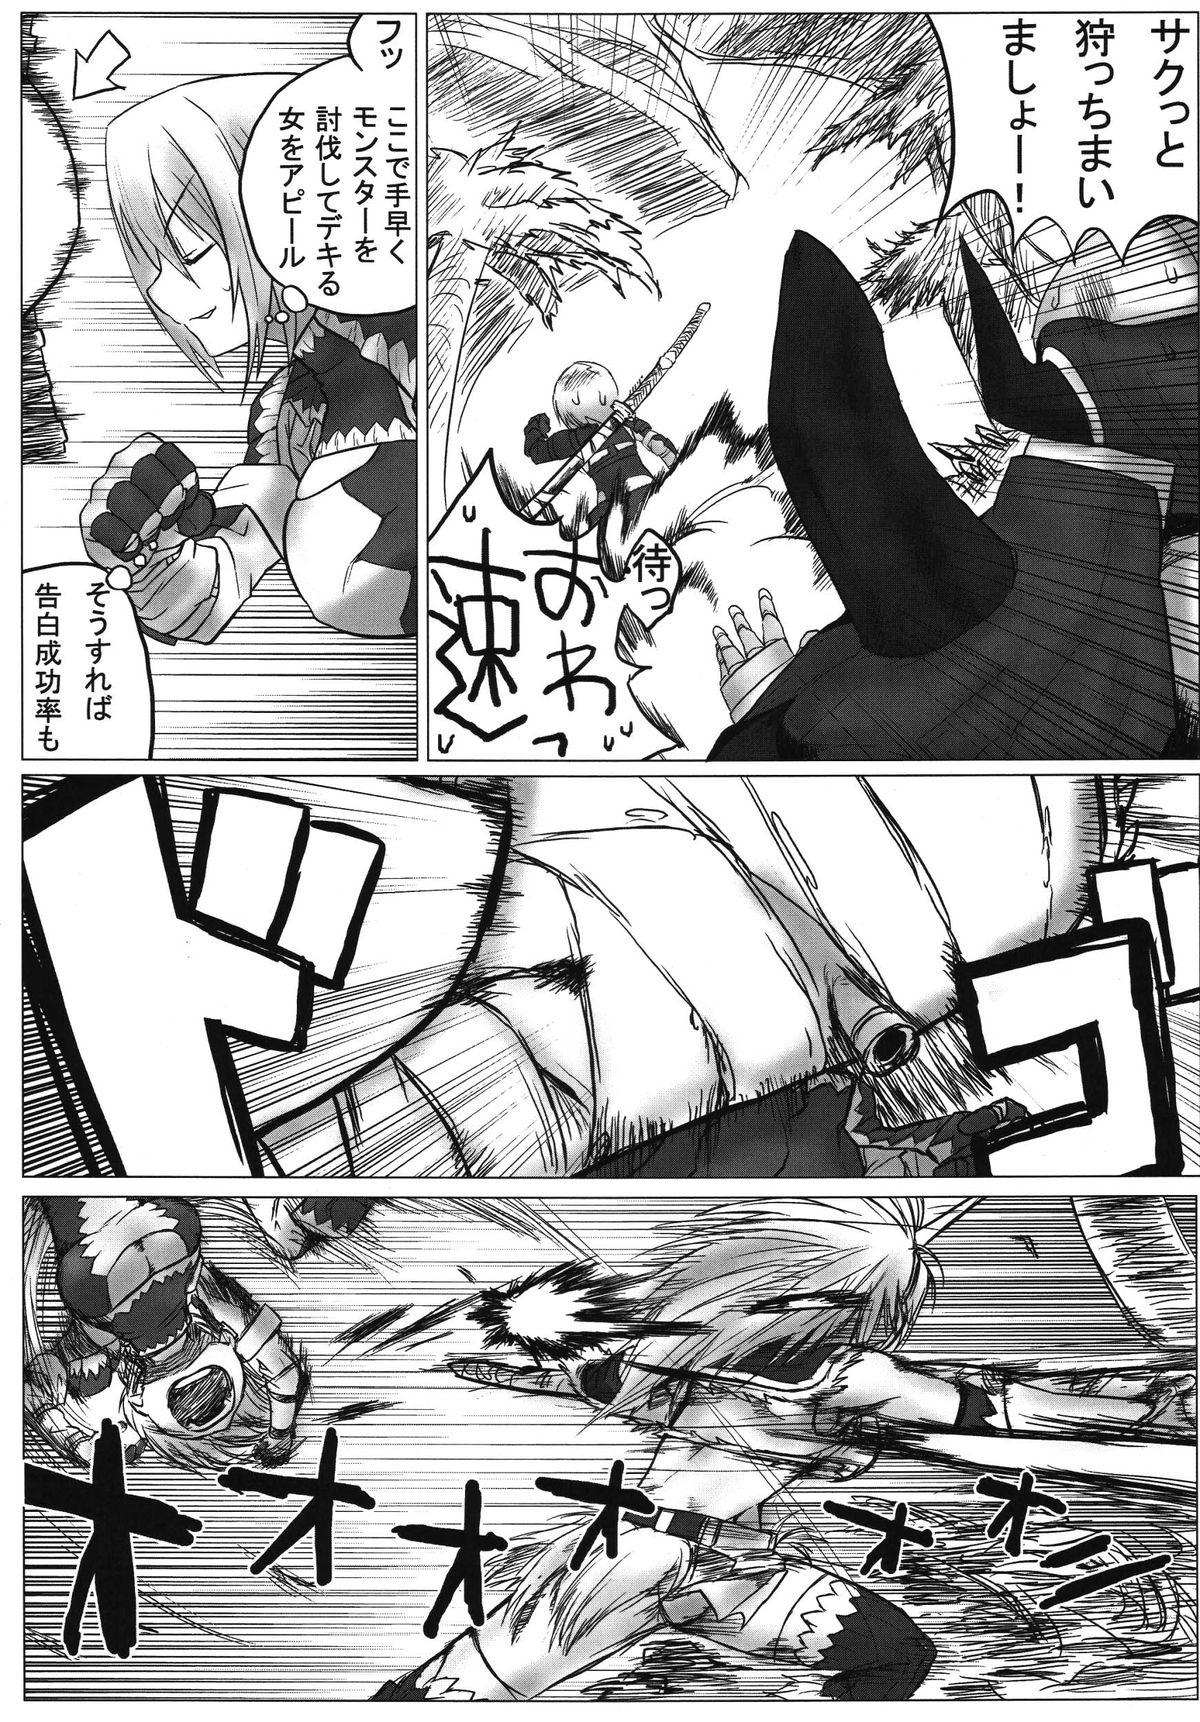 Office Boku wa Tachi Tsukai, Kimi wa Nani Tsukai？ - Monster hunter Defloration - Page 8